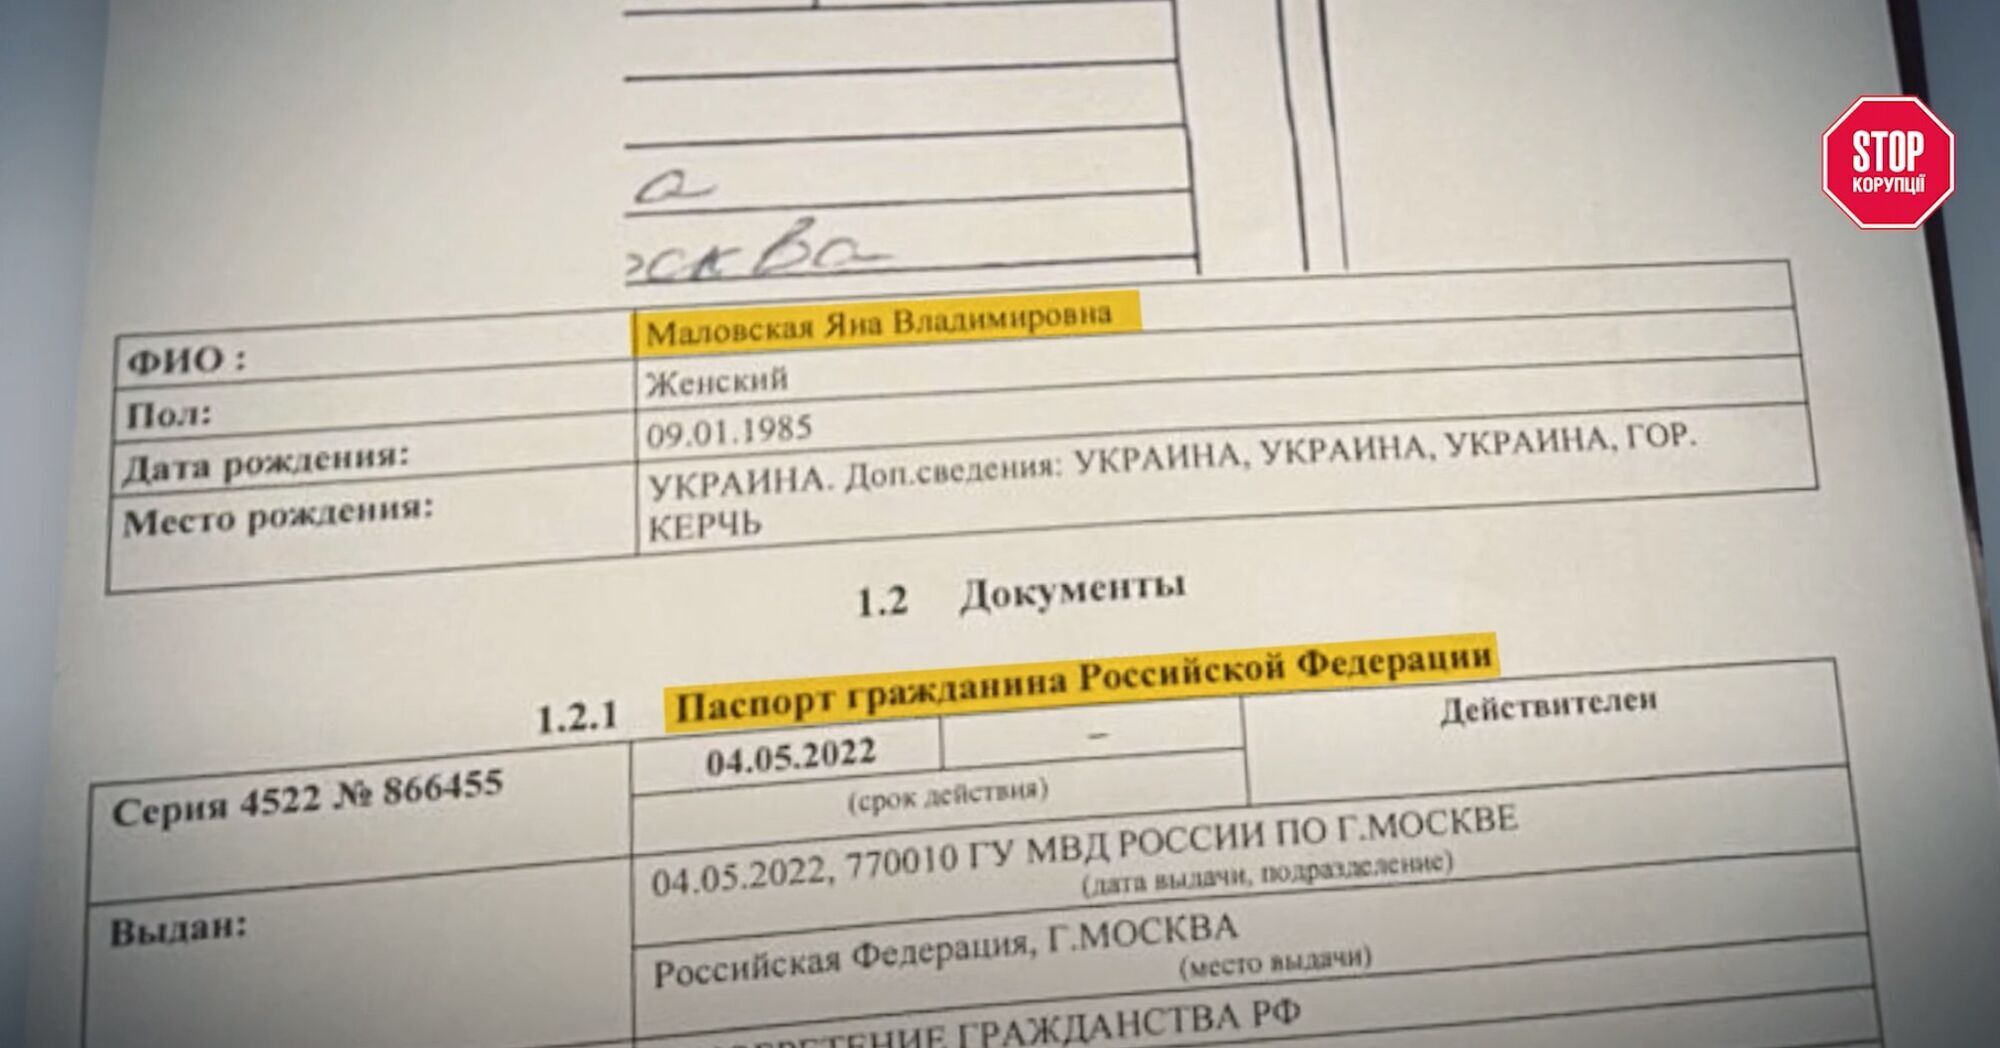 Яна Маловська, ймовірно, має російський паспорт